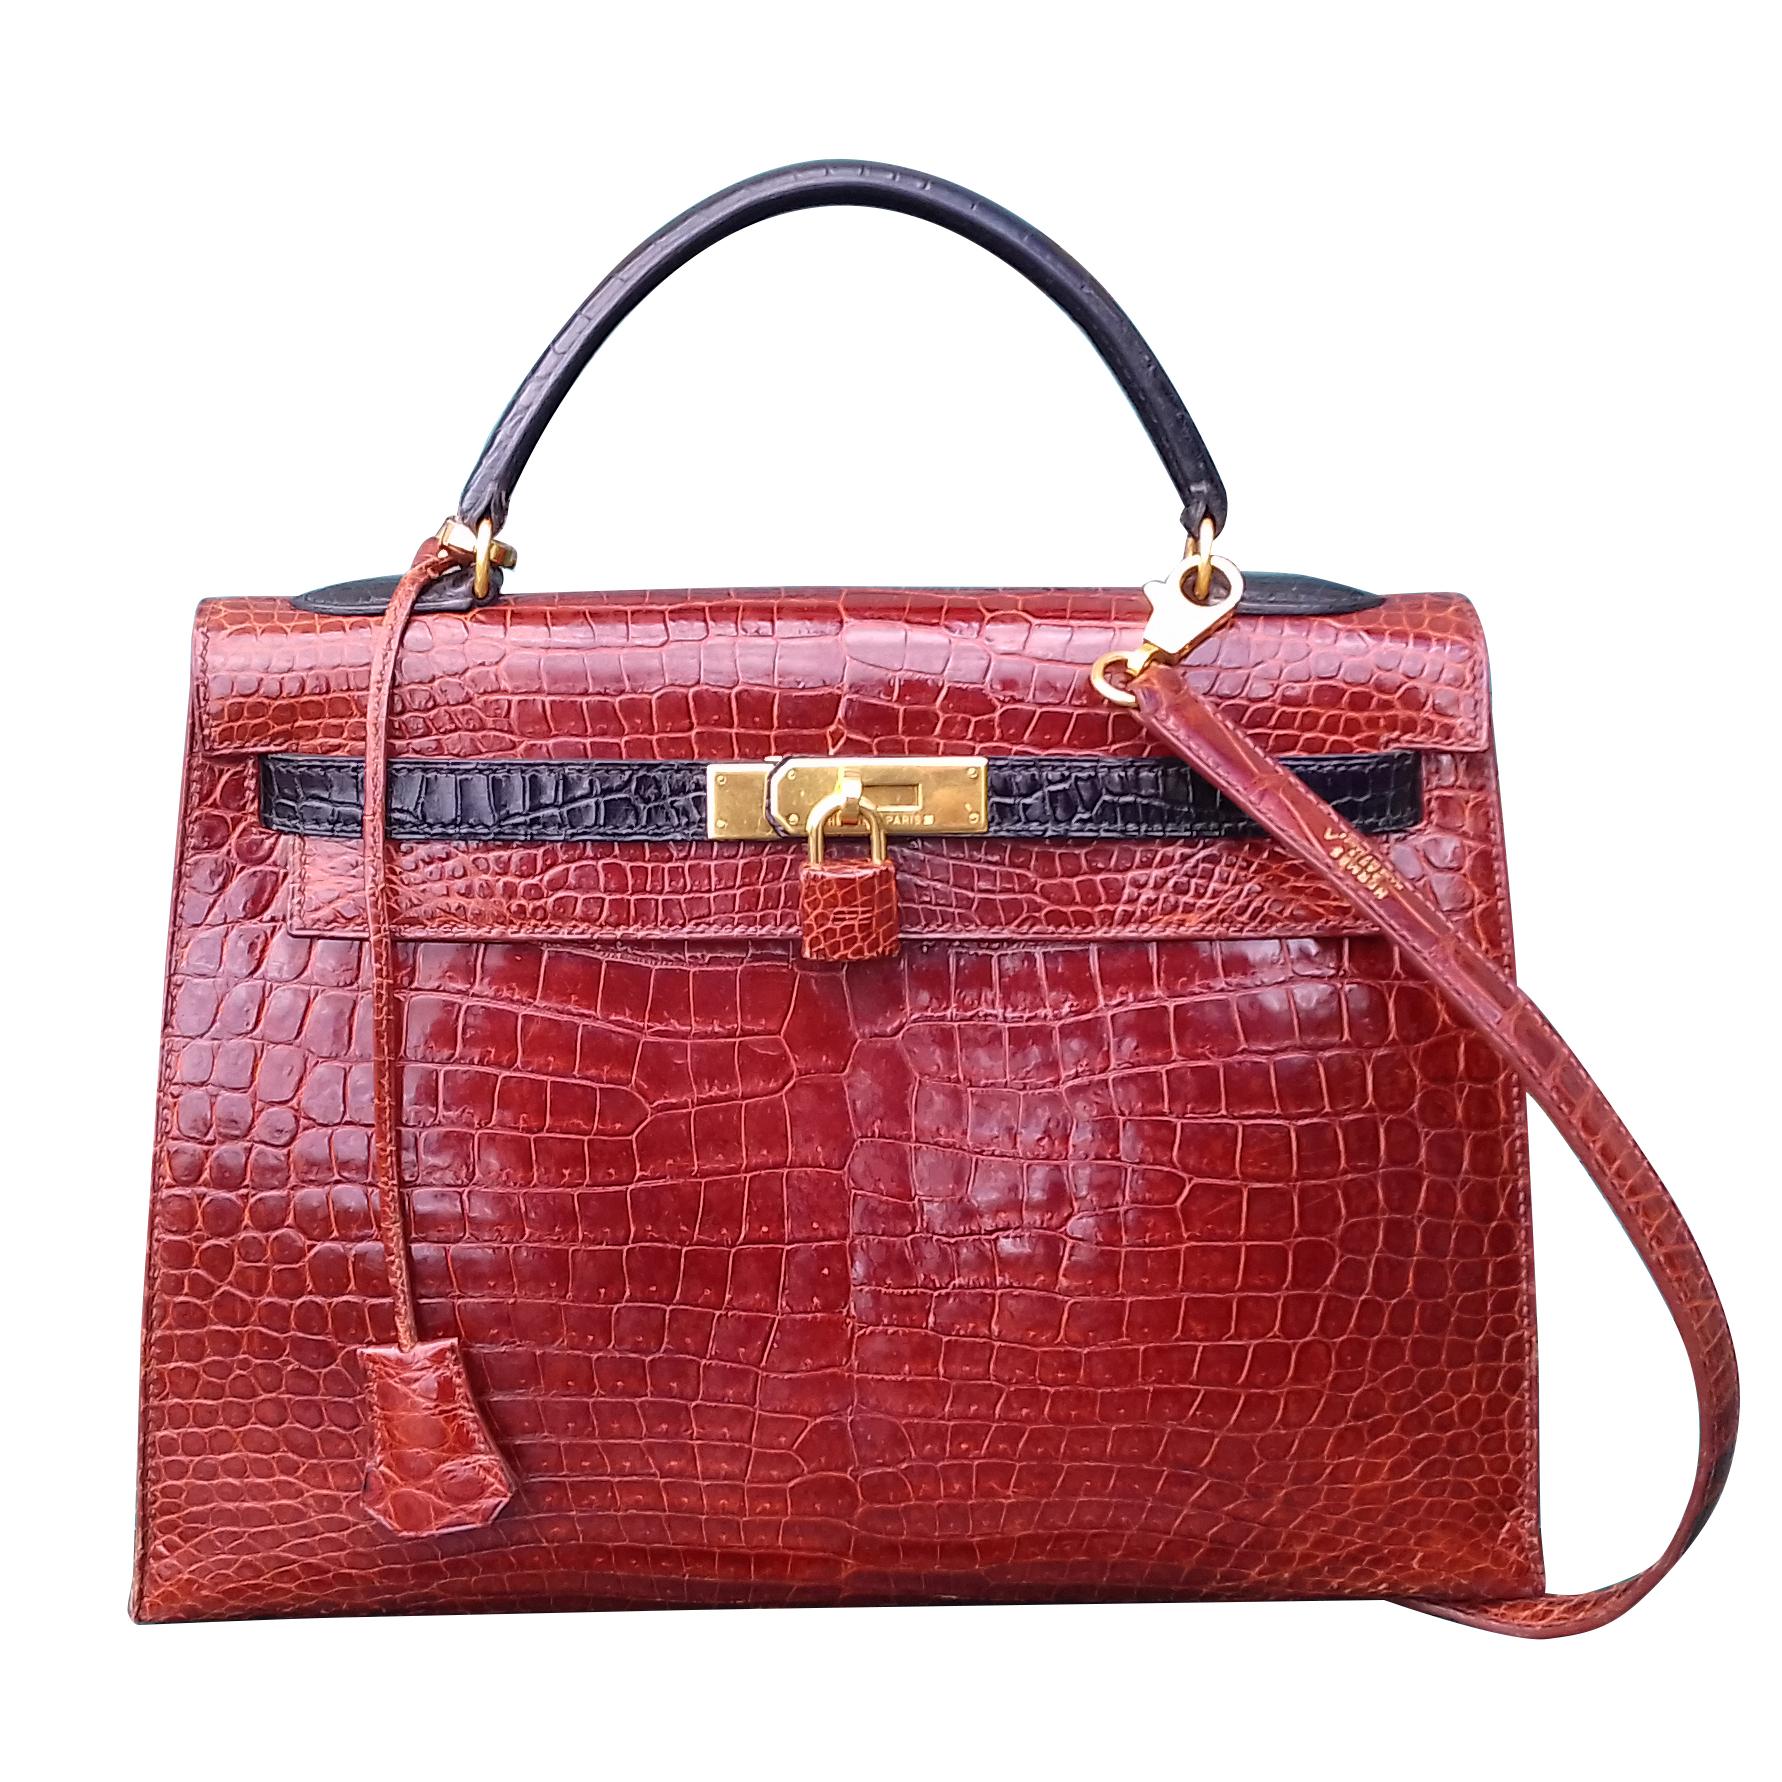 Exceptional Hermès Kelly Bag Vintage Bicolore Etrusque and Black Crocodile 33 cm